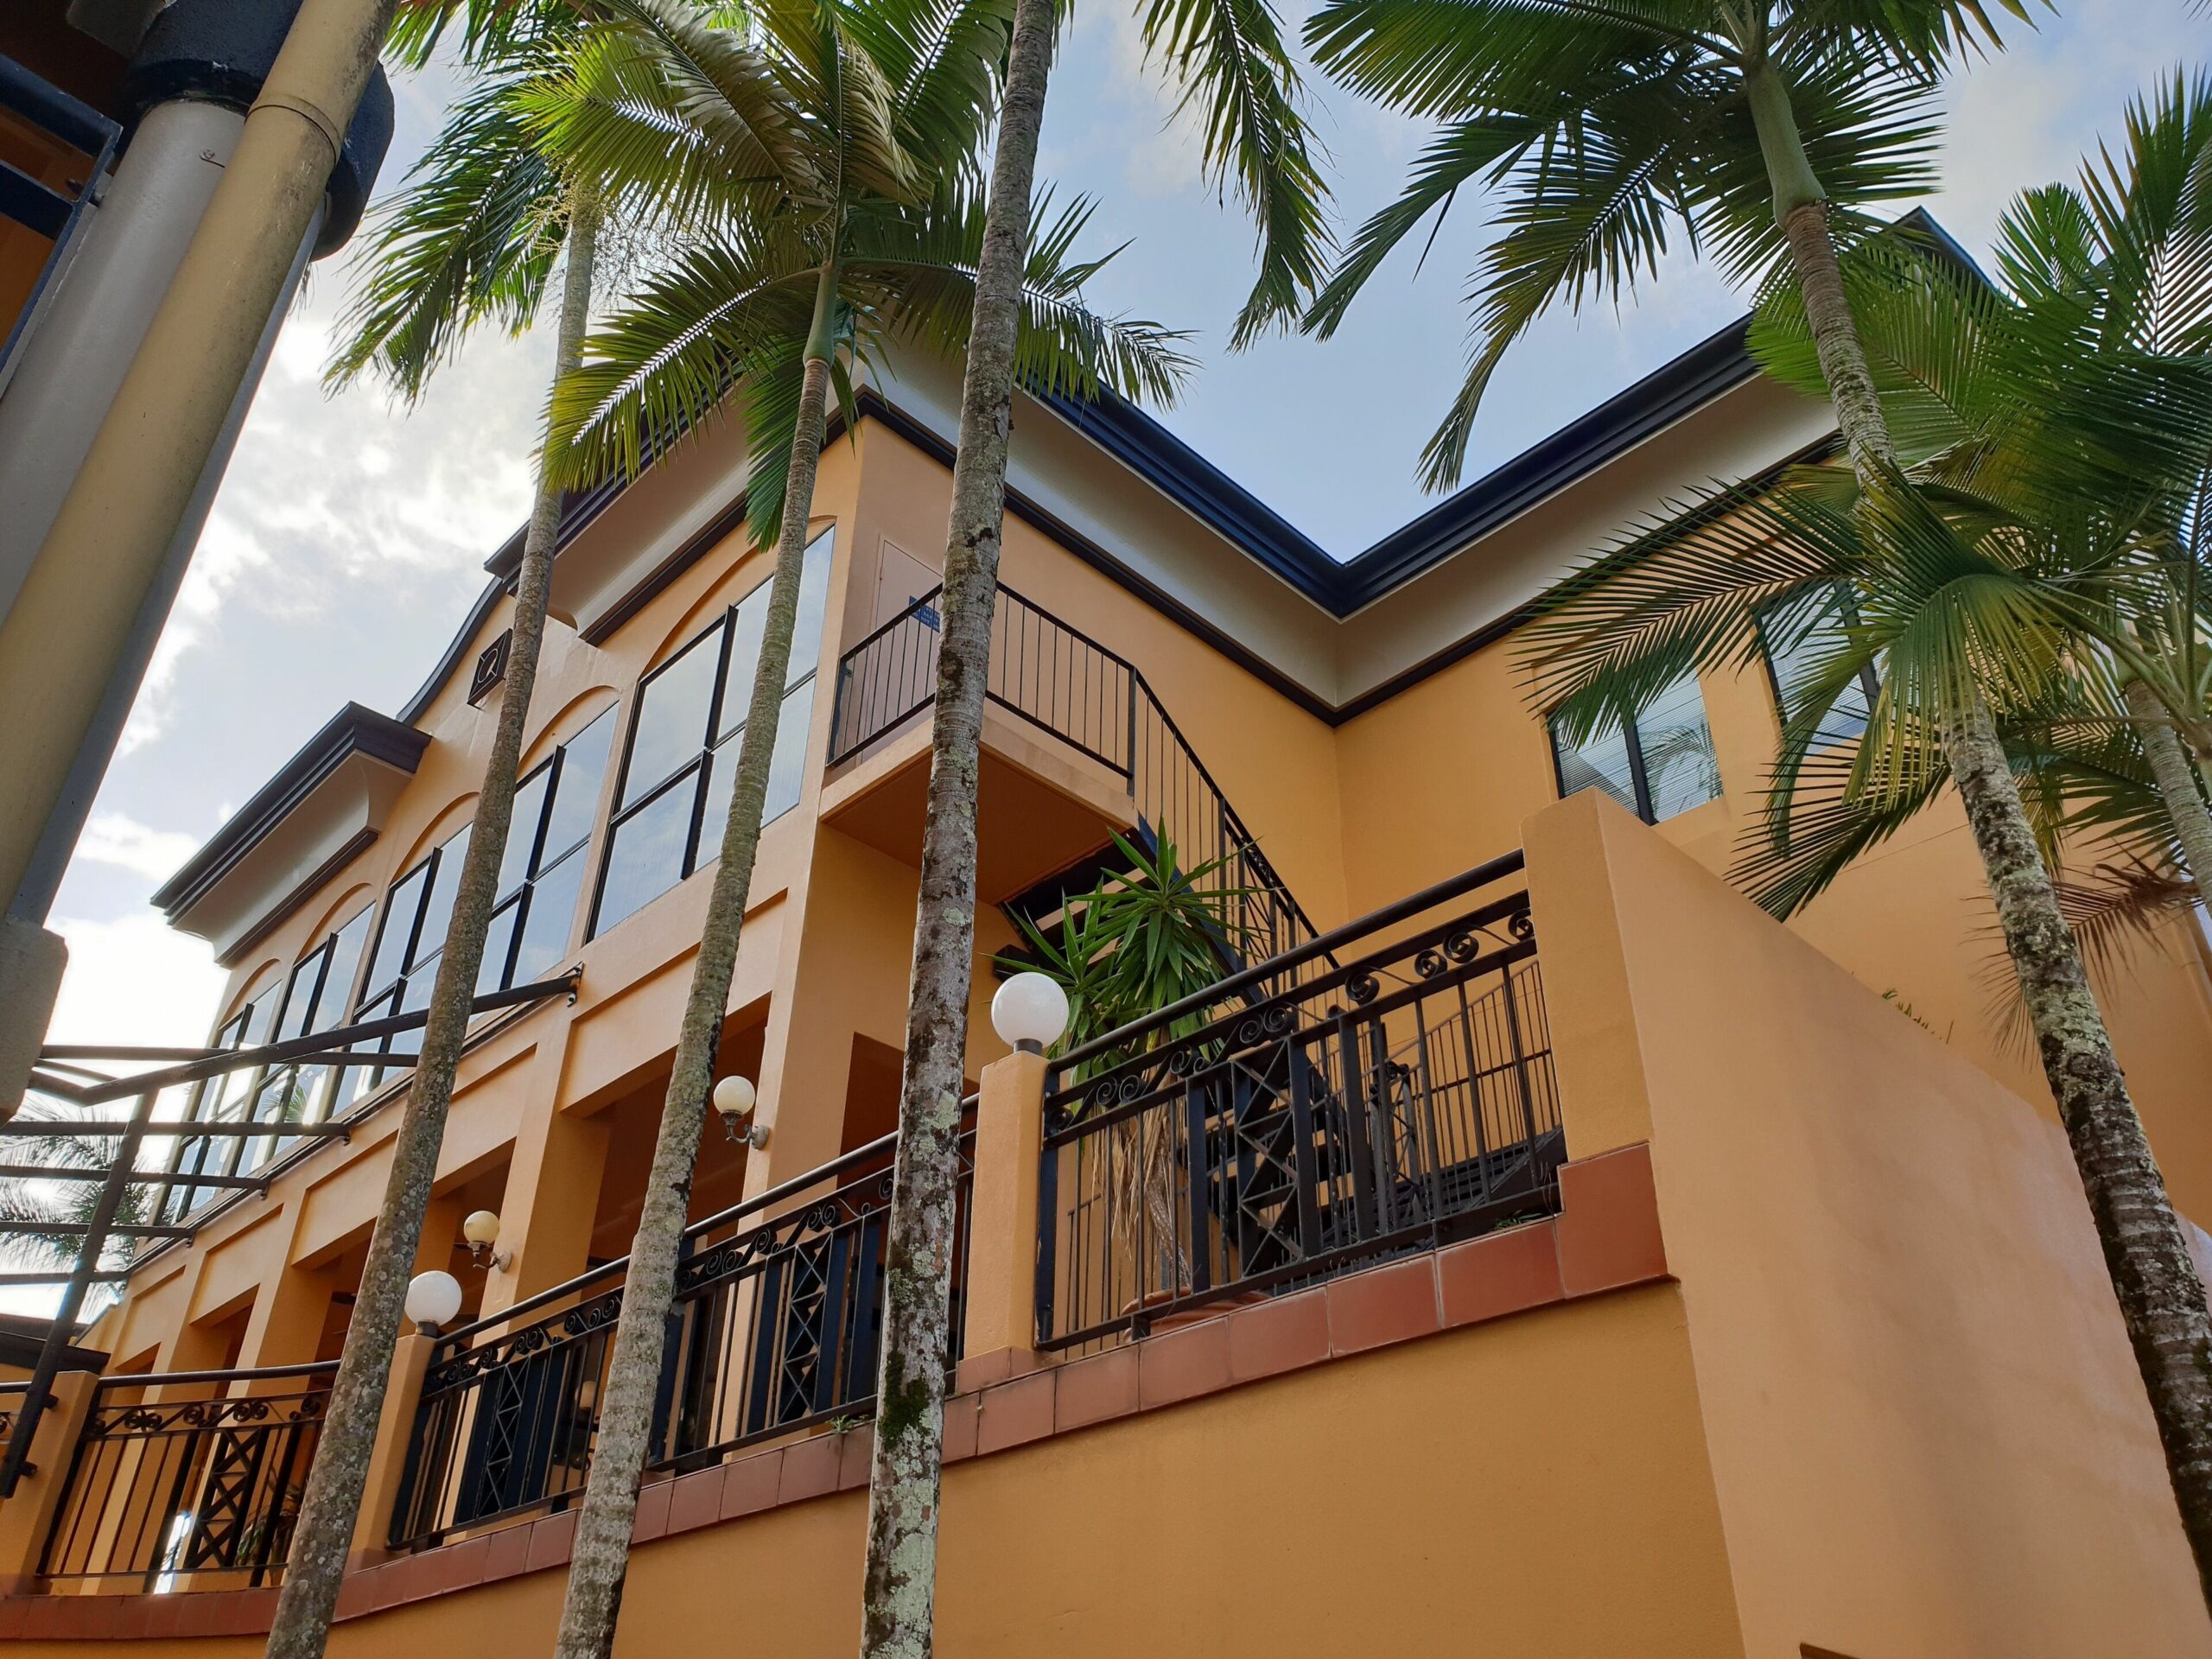 Palm Royale Cairns